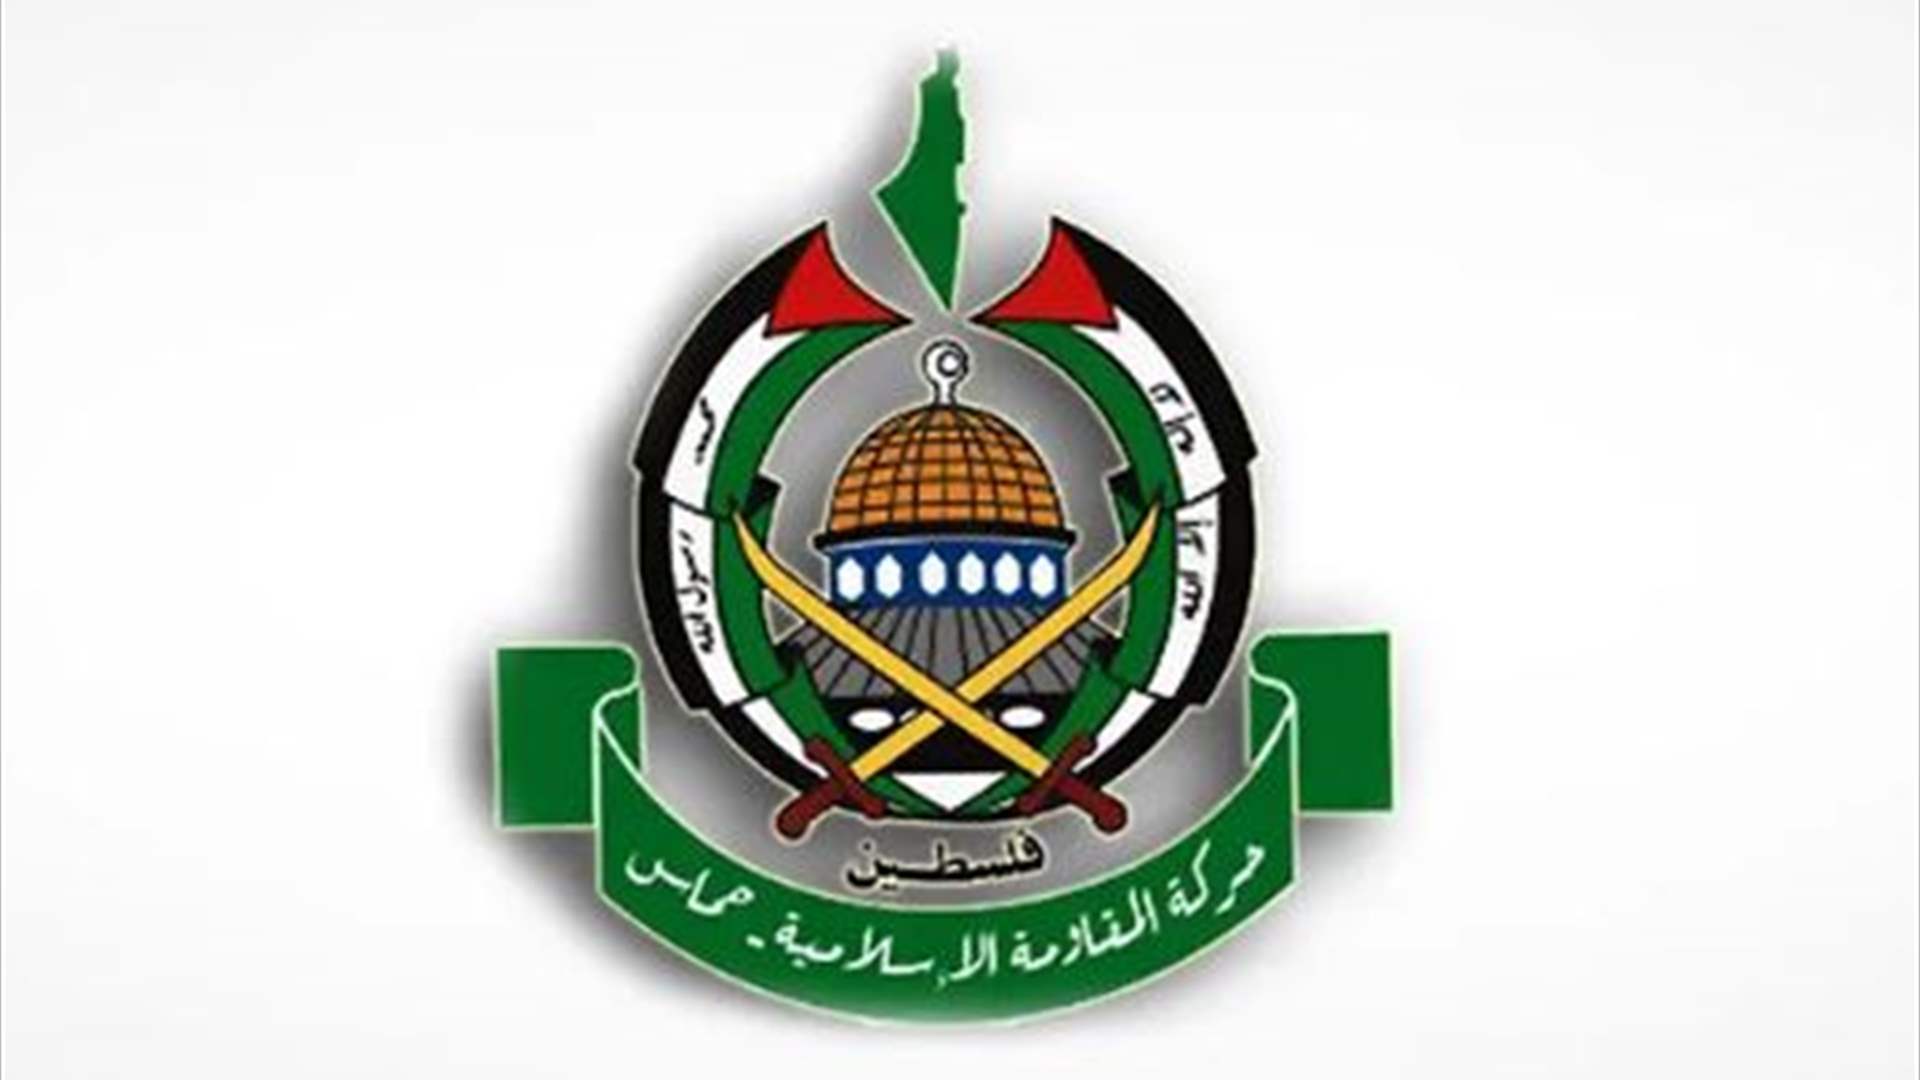 حماس: مستعدون للتوصل &quot;لاتفاق كامل&quot; يتضمن صفقة تبادل شاملة إذا أوقفت إسرائيل الحرب